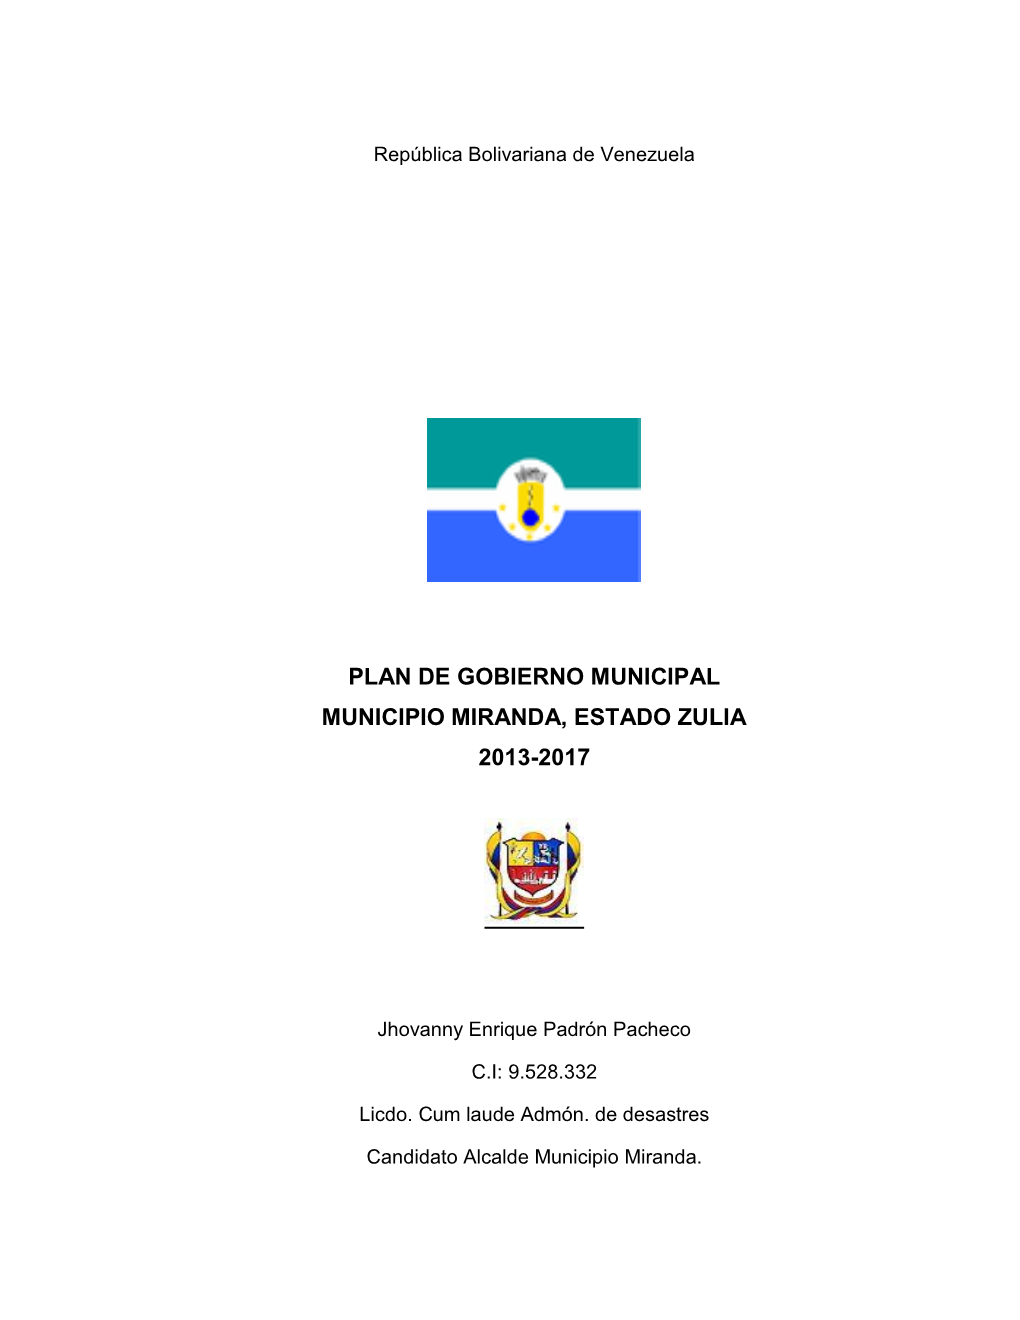 Plan De Gobierno Municipal Municipio Miranda, Estado Zulia 2013-2017